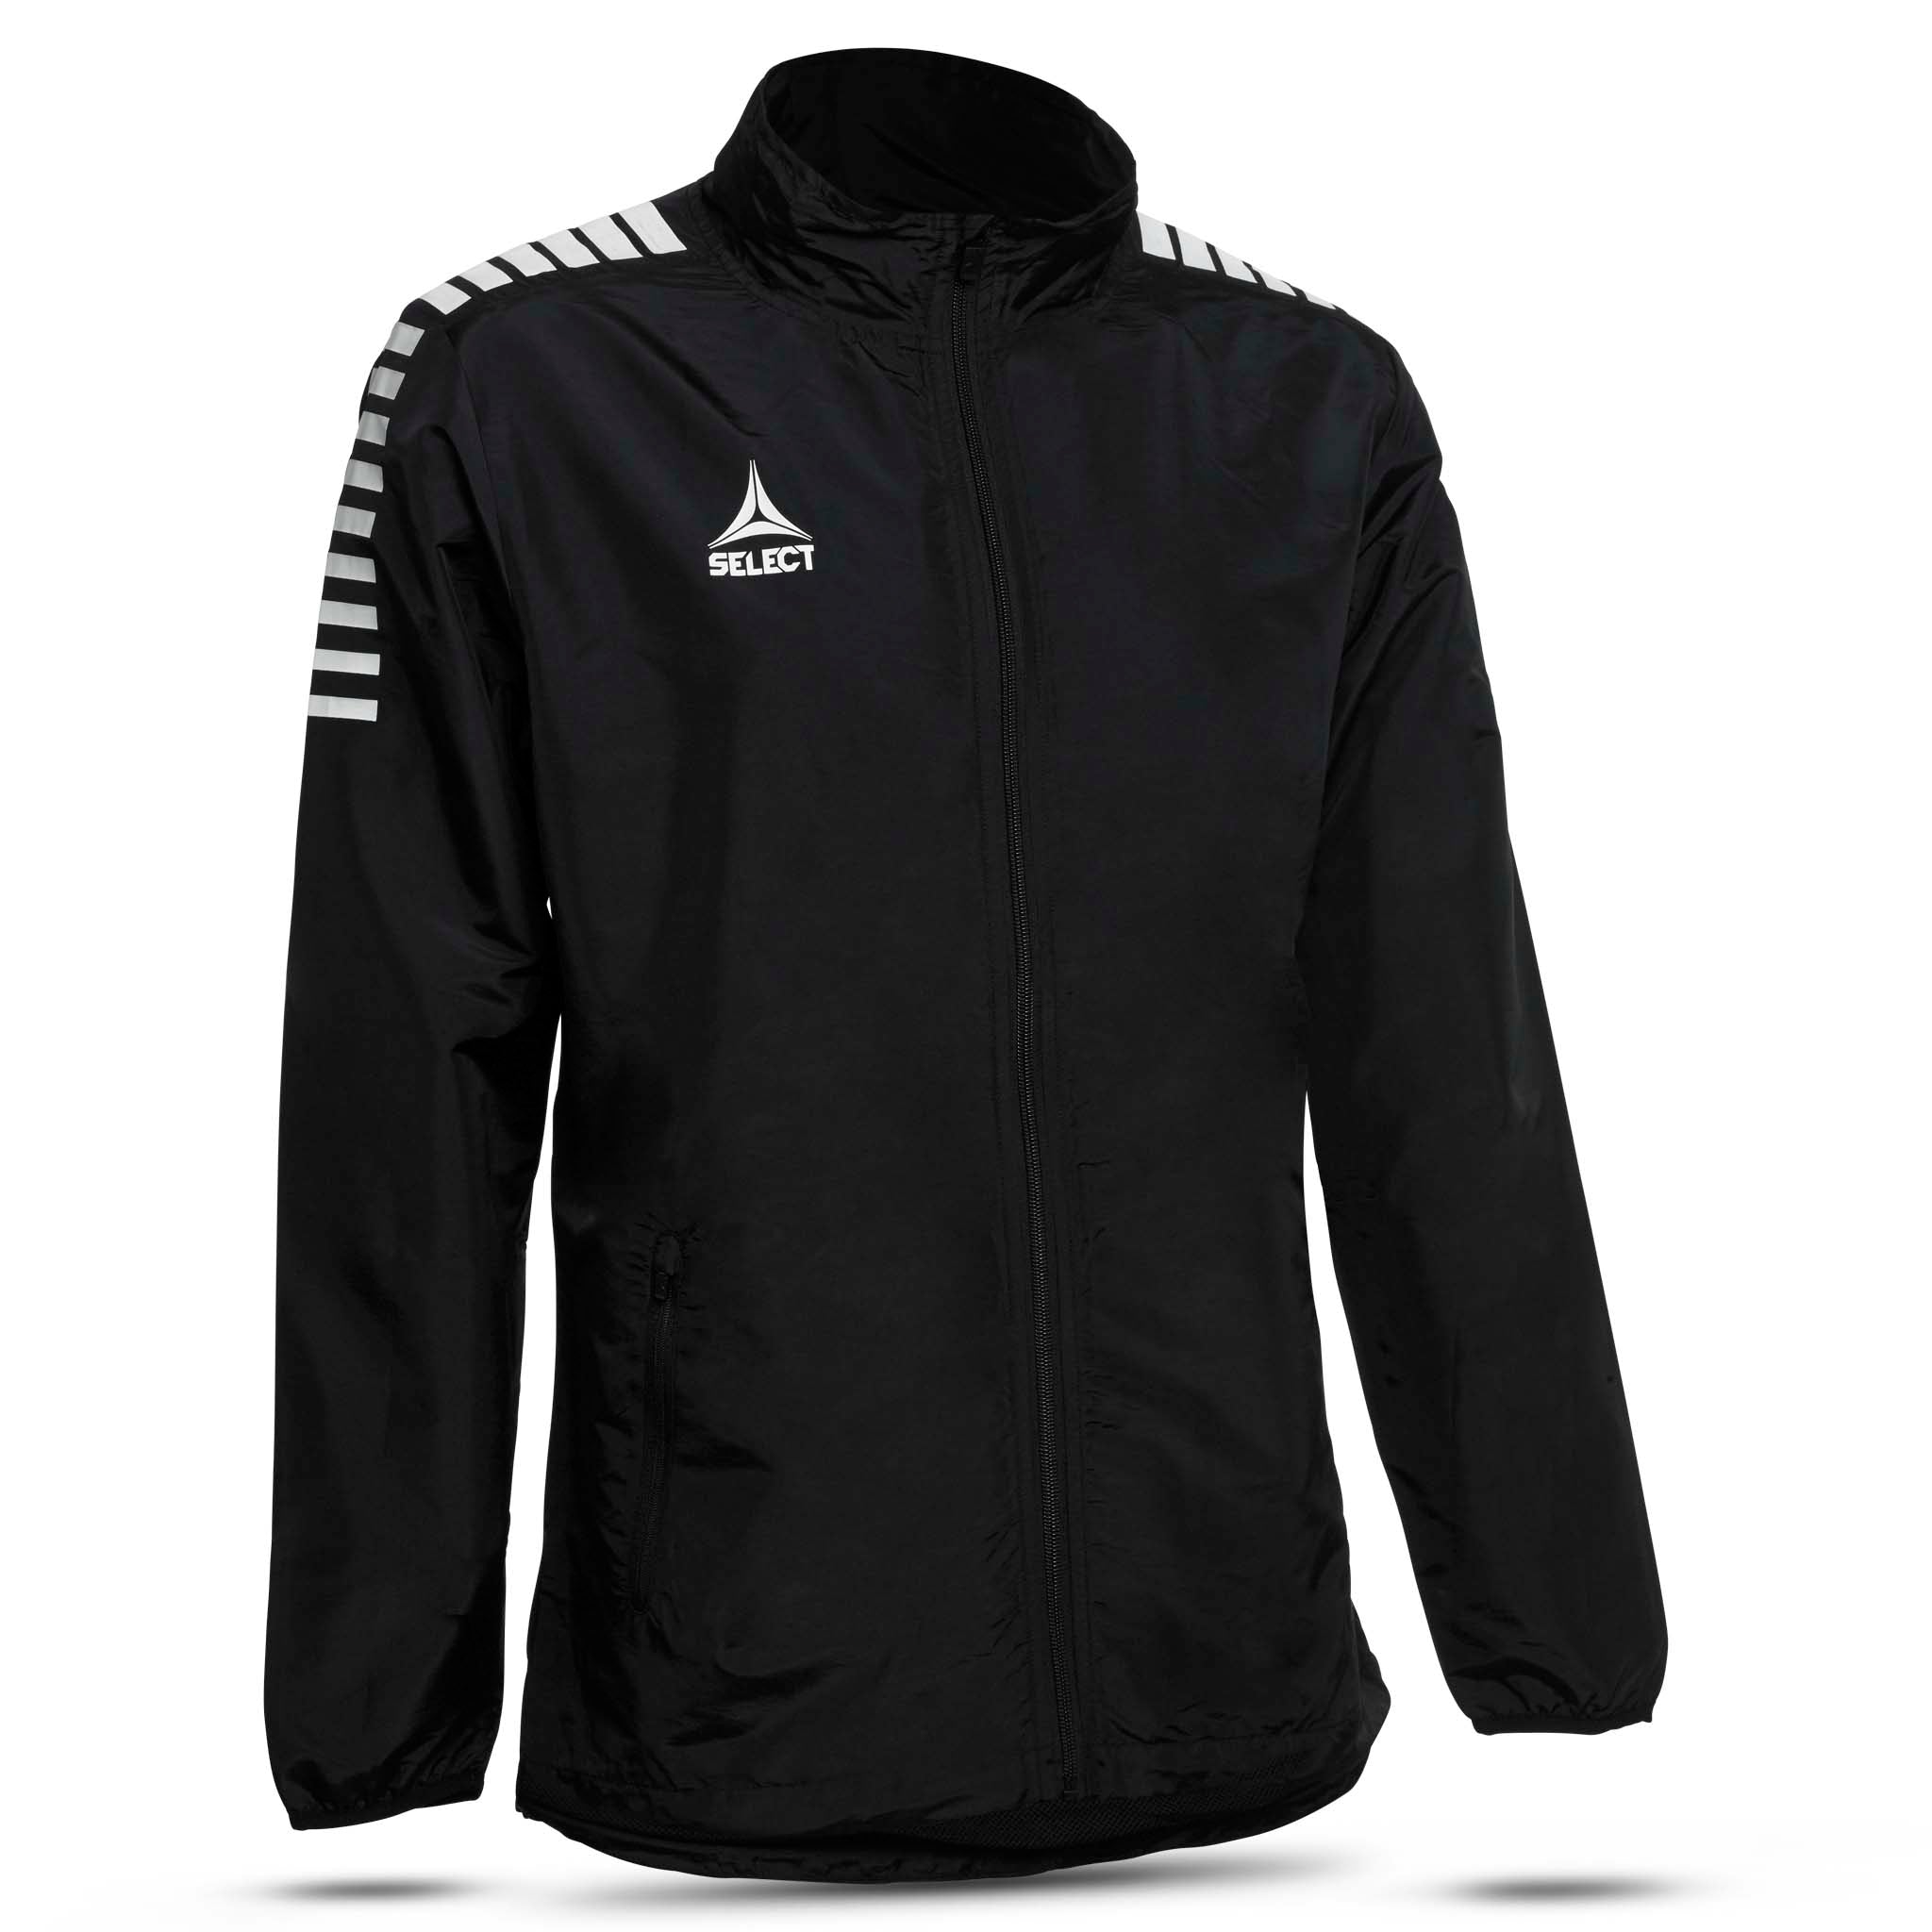 Training jacket - Monaco, youth #colour_black